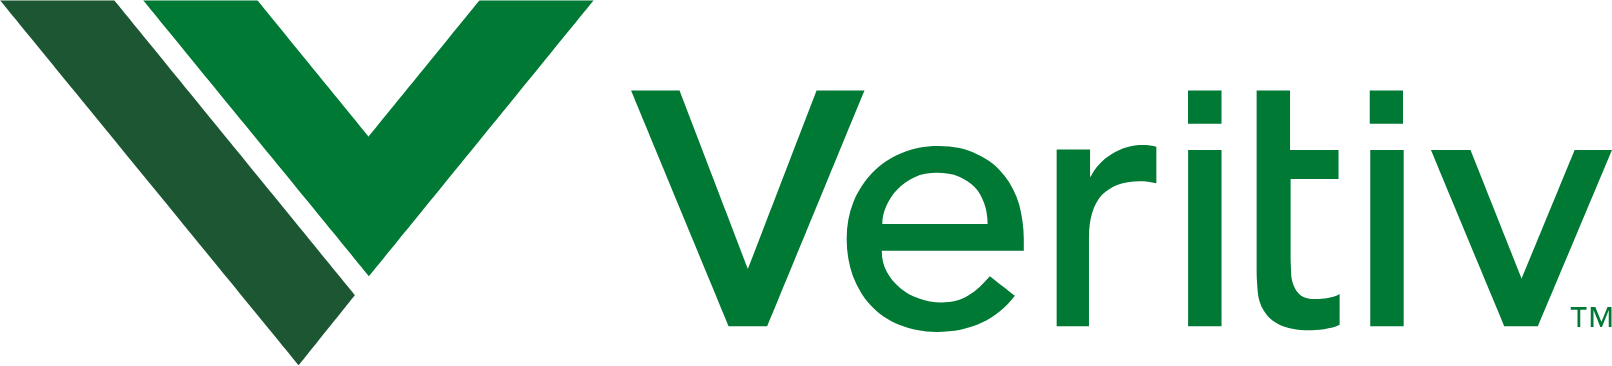 Veritiv
 logo large (transparent PNG)